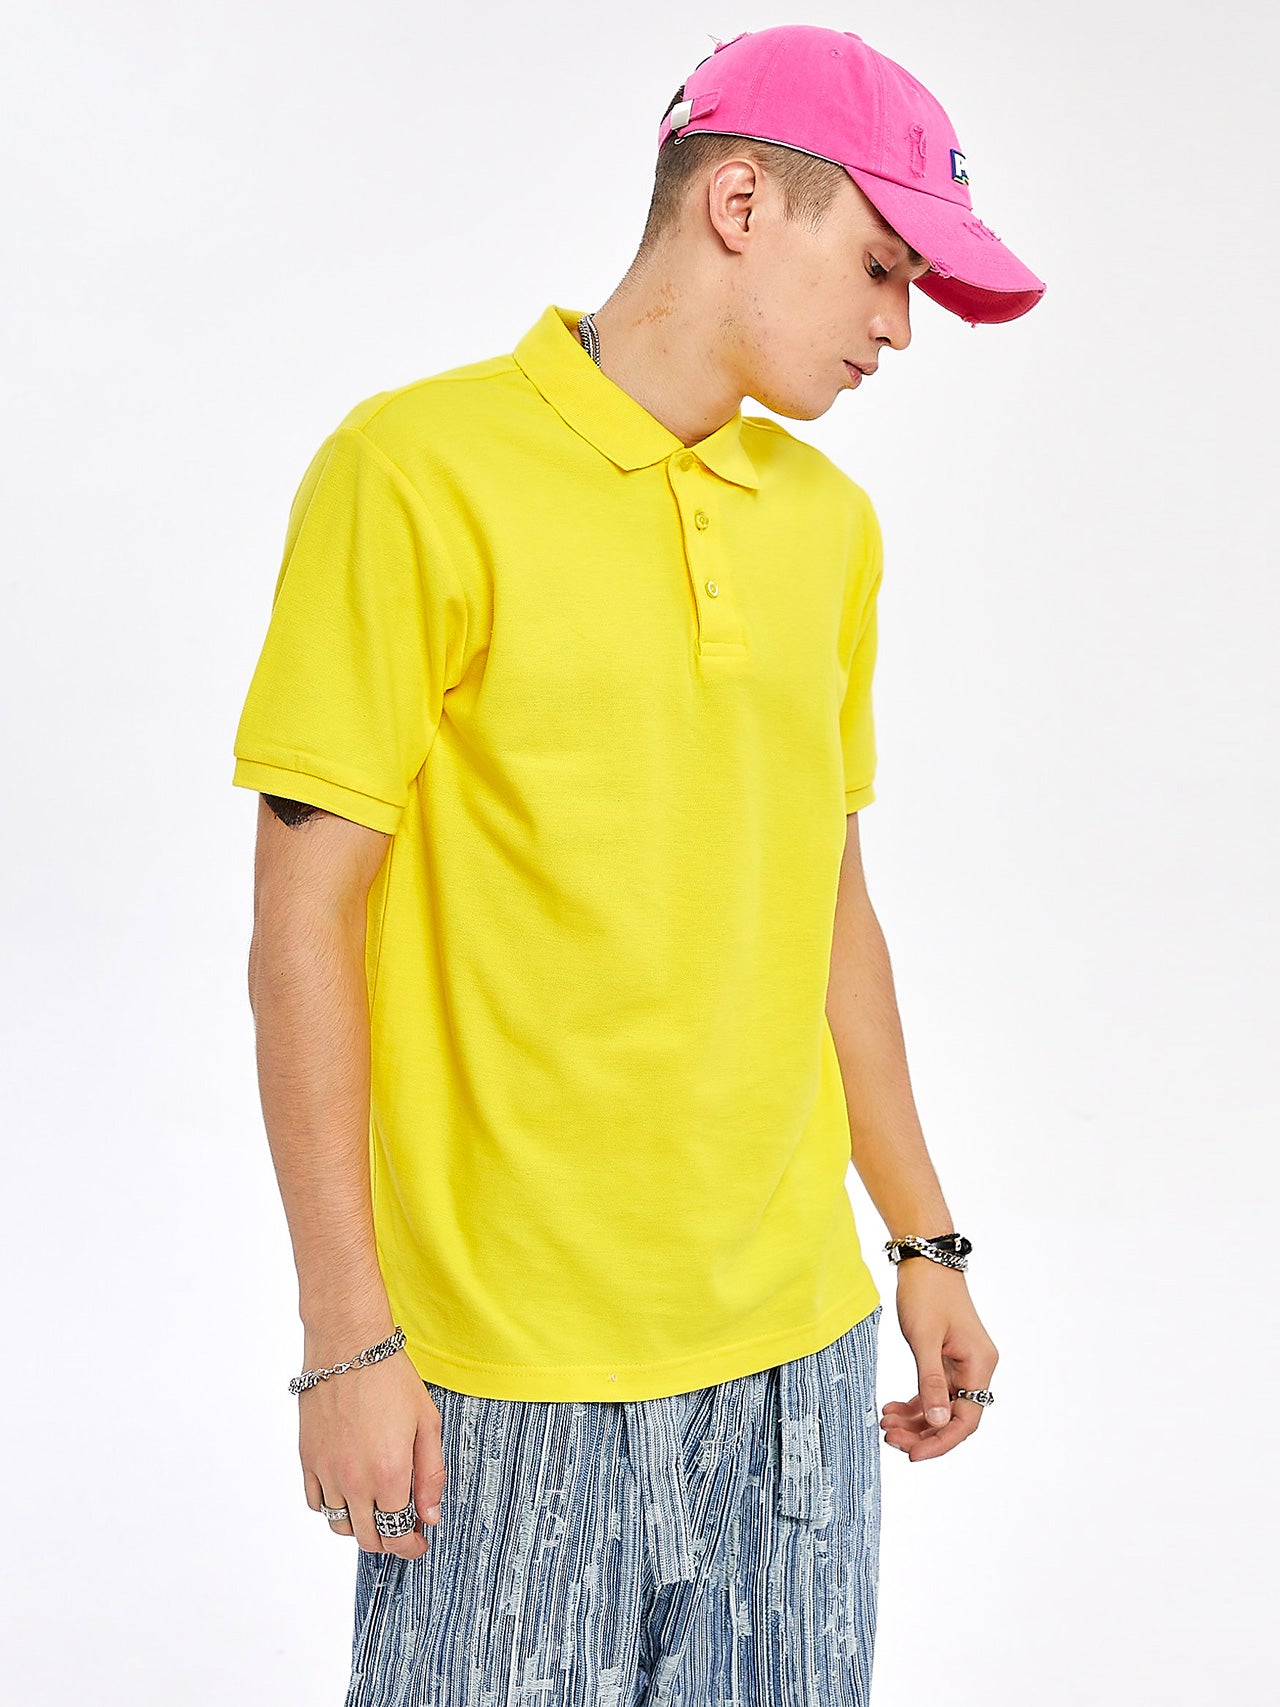 Plain Yellow Cotton Polo for men's